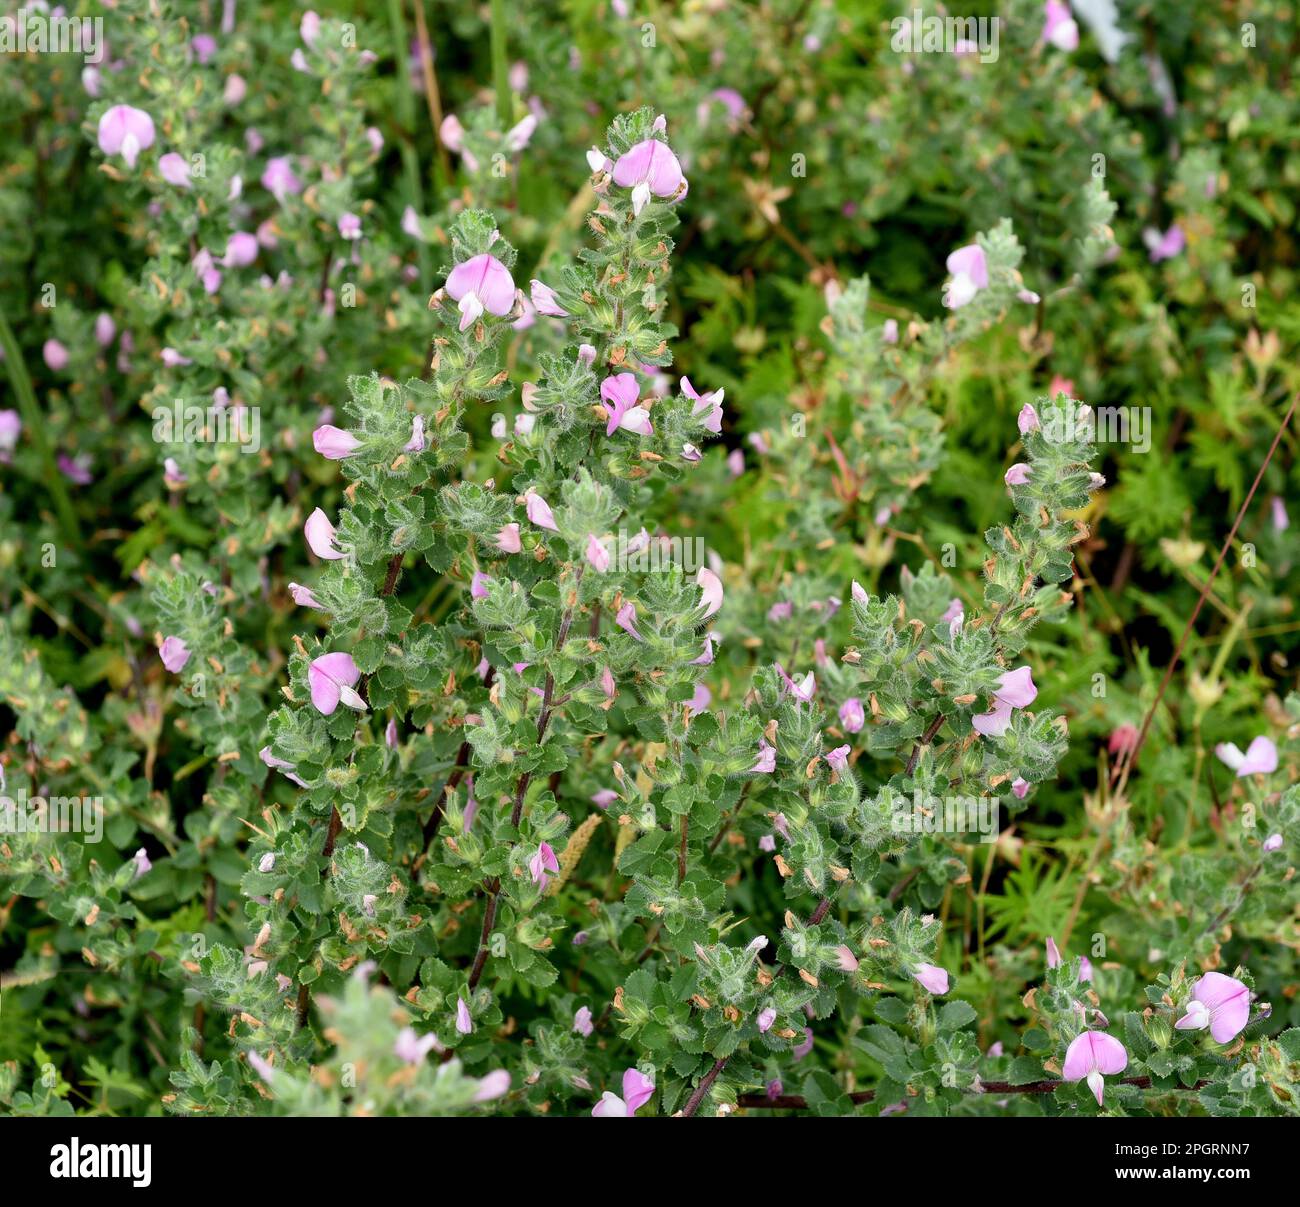 Hauhechel Dorniger, Ononis spinosa ist eine Wildpflanze und eine wichtige Heilpflanze. Restharrow Thorny, Ononis spinosa ist eine wilde Pflanze und eine Importpflanze Stockfoto